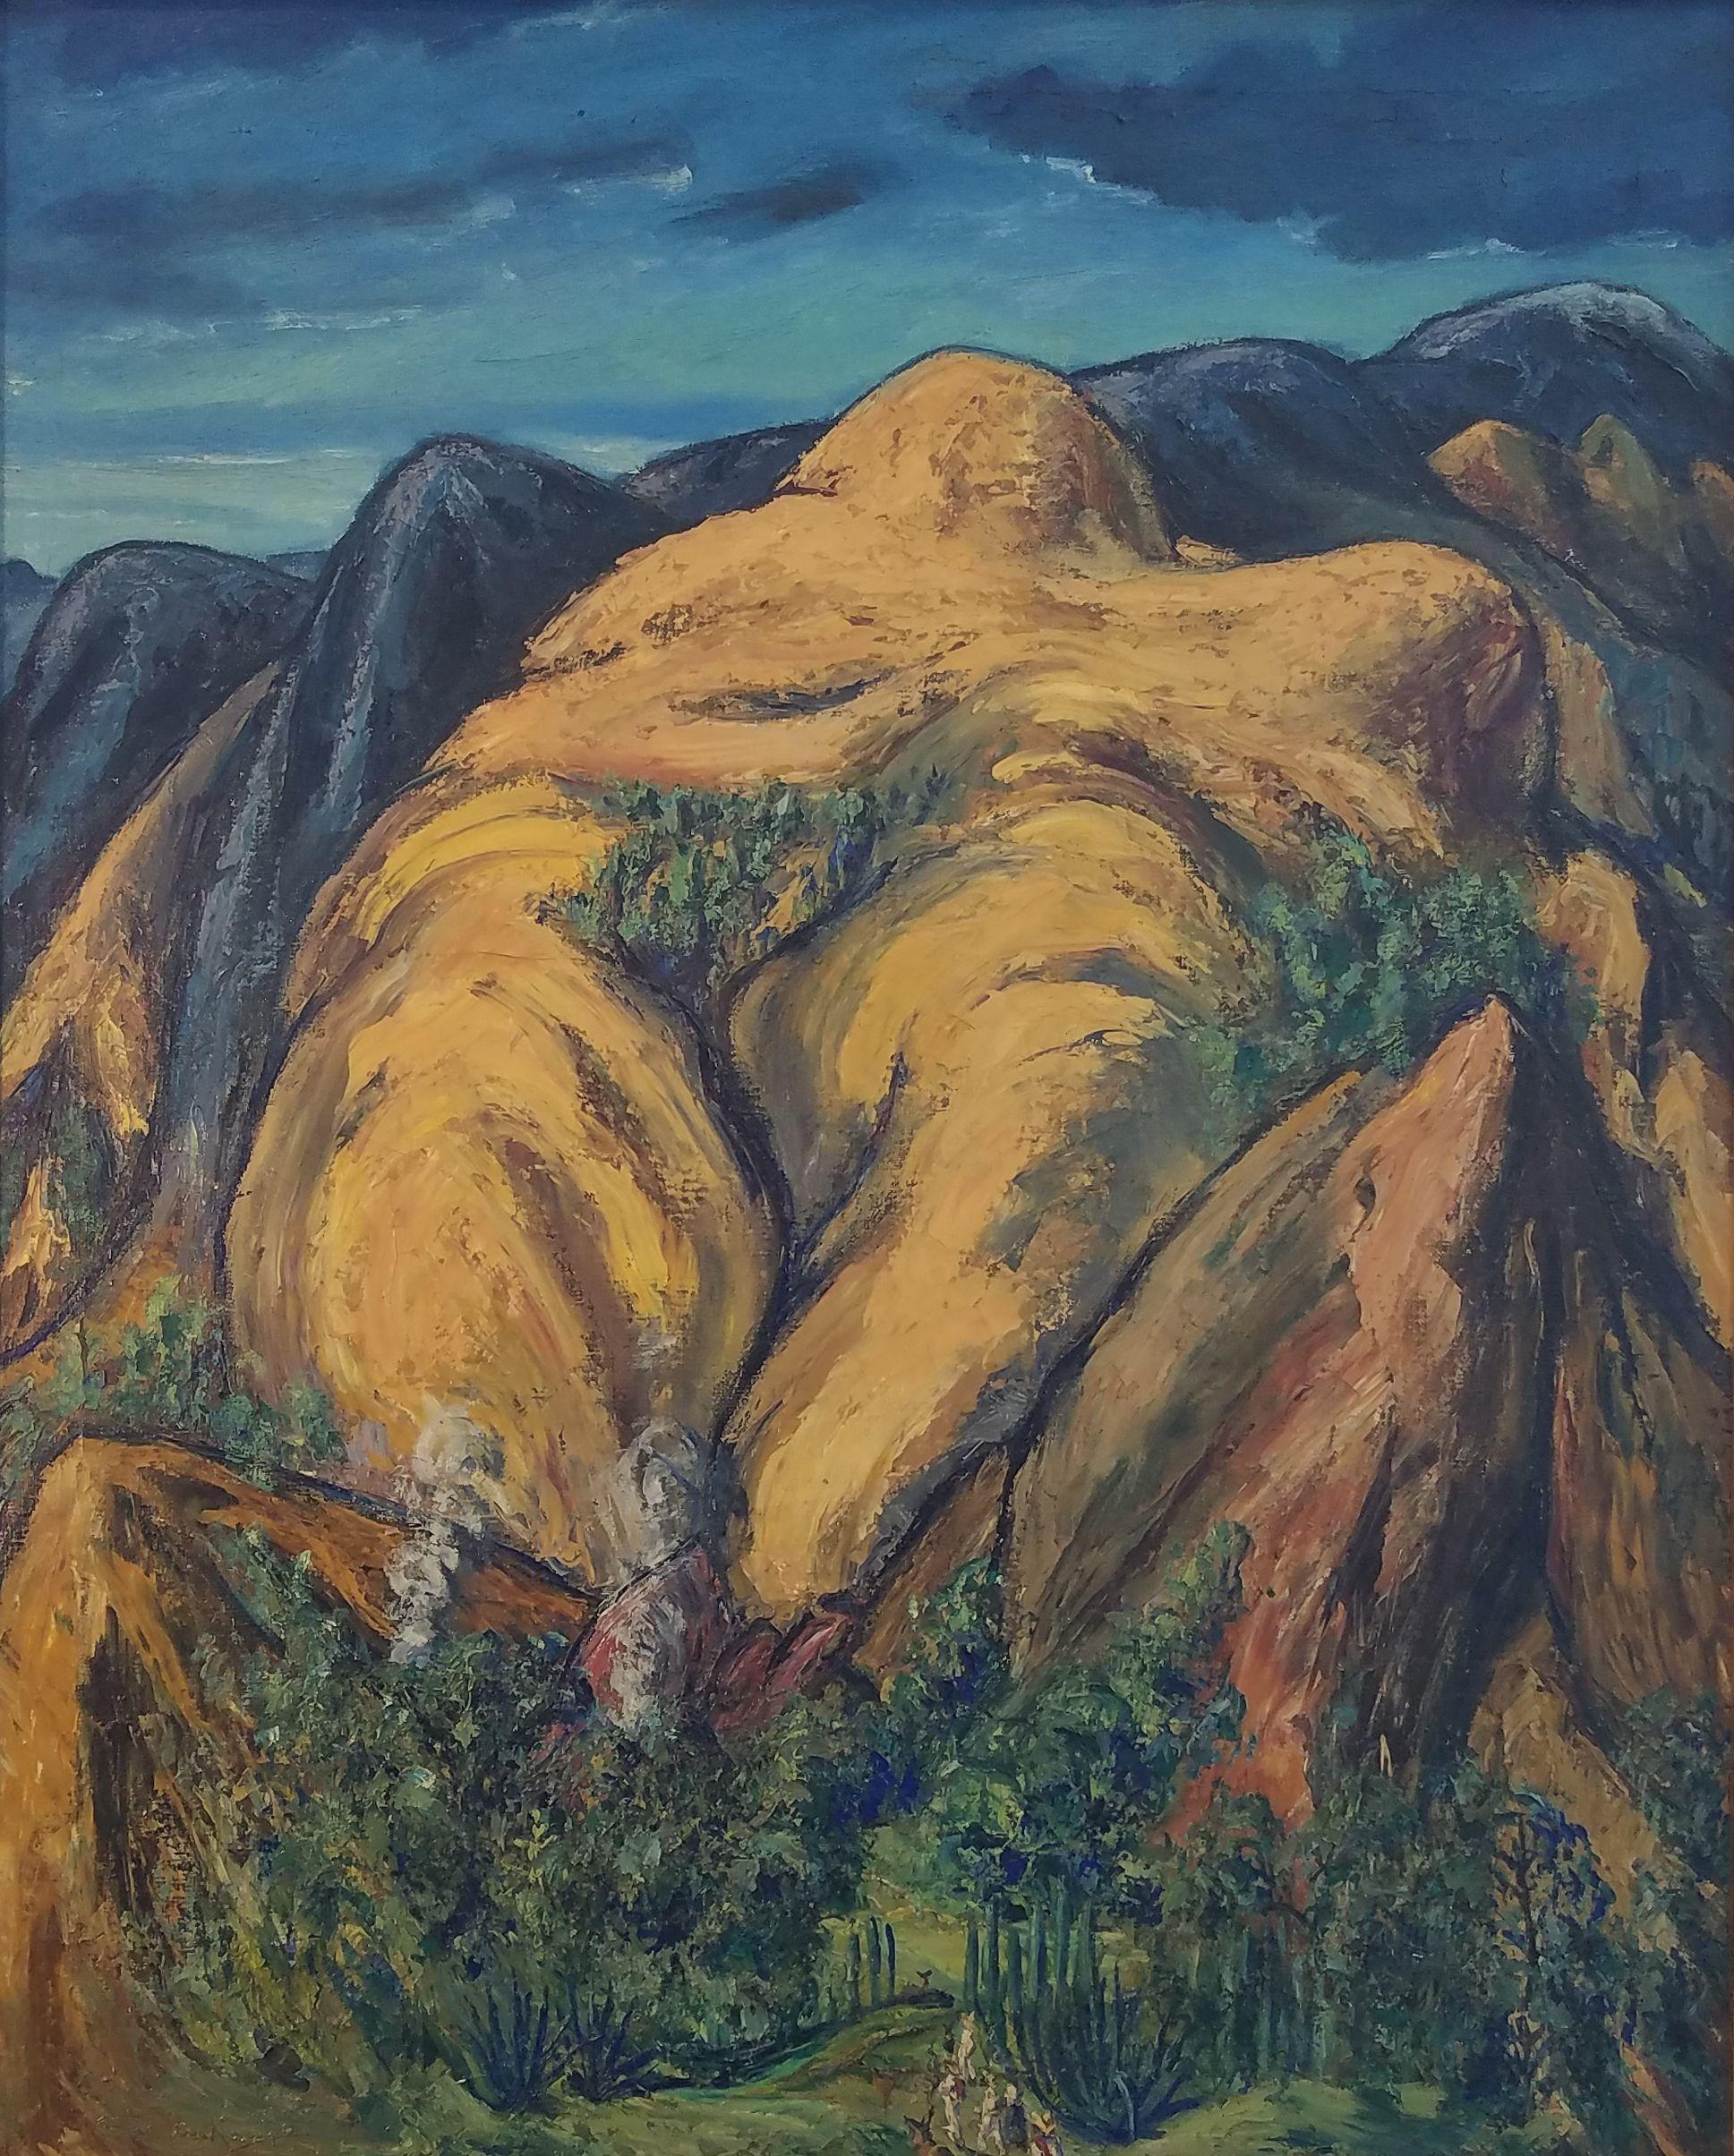 Hendrik (Henry) J Glintenkamp (1887 - 1946)
Montagnes mexicaines, 1940
Huile sur toile
32 x 26 pouces (81 x 66 cm)
Signé en bas à gauche ; signé et daté au verso

Le peintre et illustrateur Henry Glintenkamp (1887-1946) est surtout connu pour ses